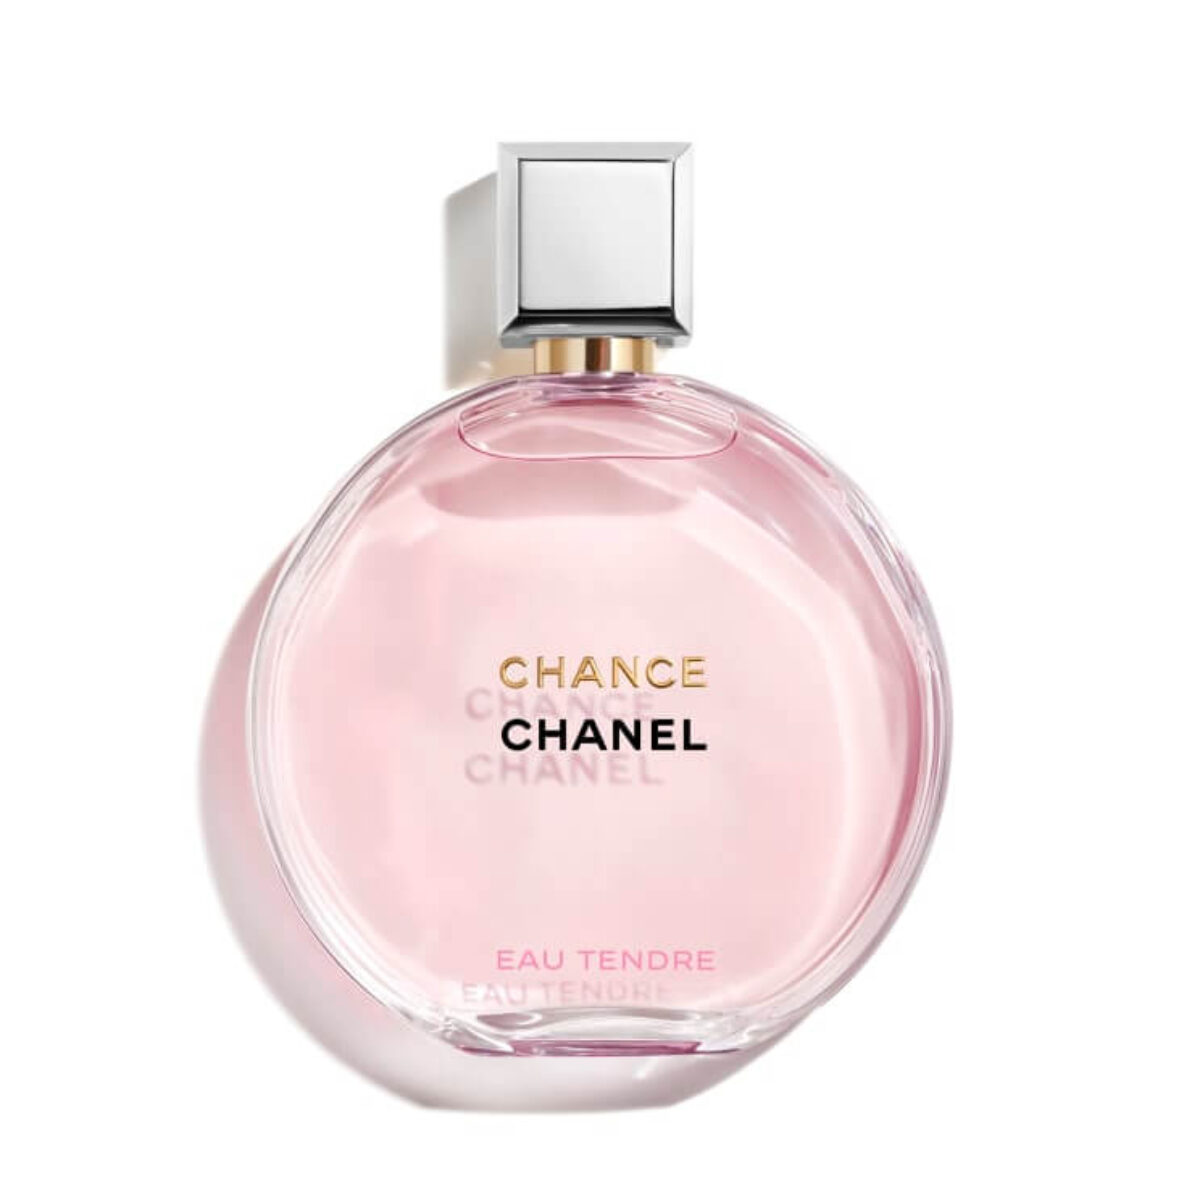 TOP 3 Chai Nước Hoa Chanel Chance Được Yêu Thích Nhất  Nước hoa văn phòng  cho nữ  Missi Perfume  YouTube